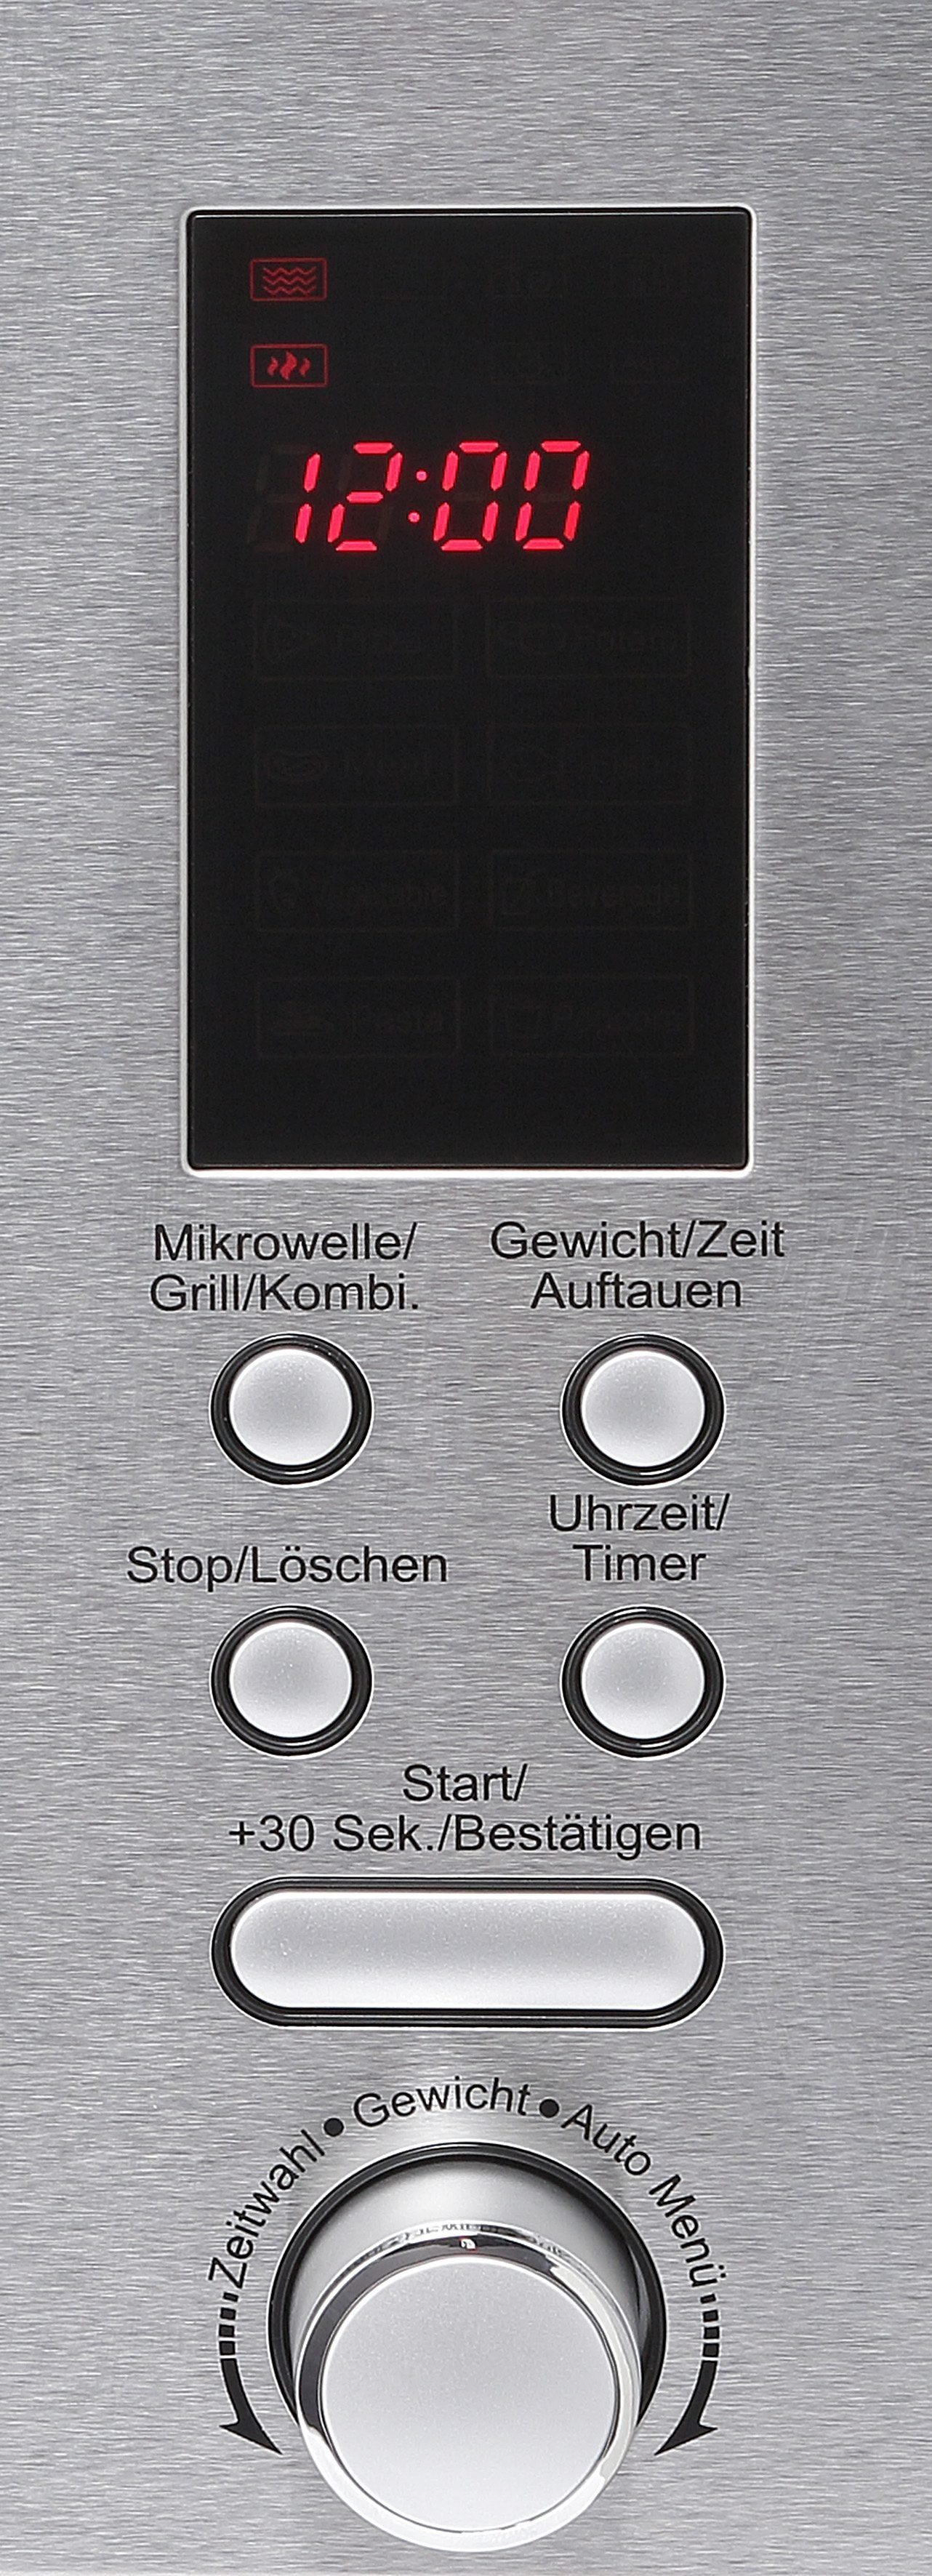 Hanseatic Mikrowelle AB820BVX-S0EE, Einbau-Mikrowelle